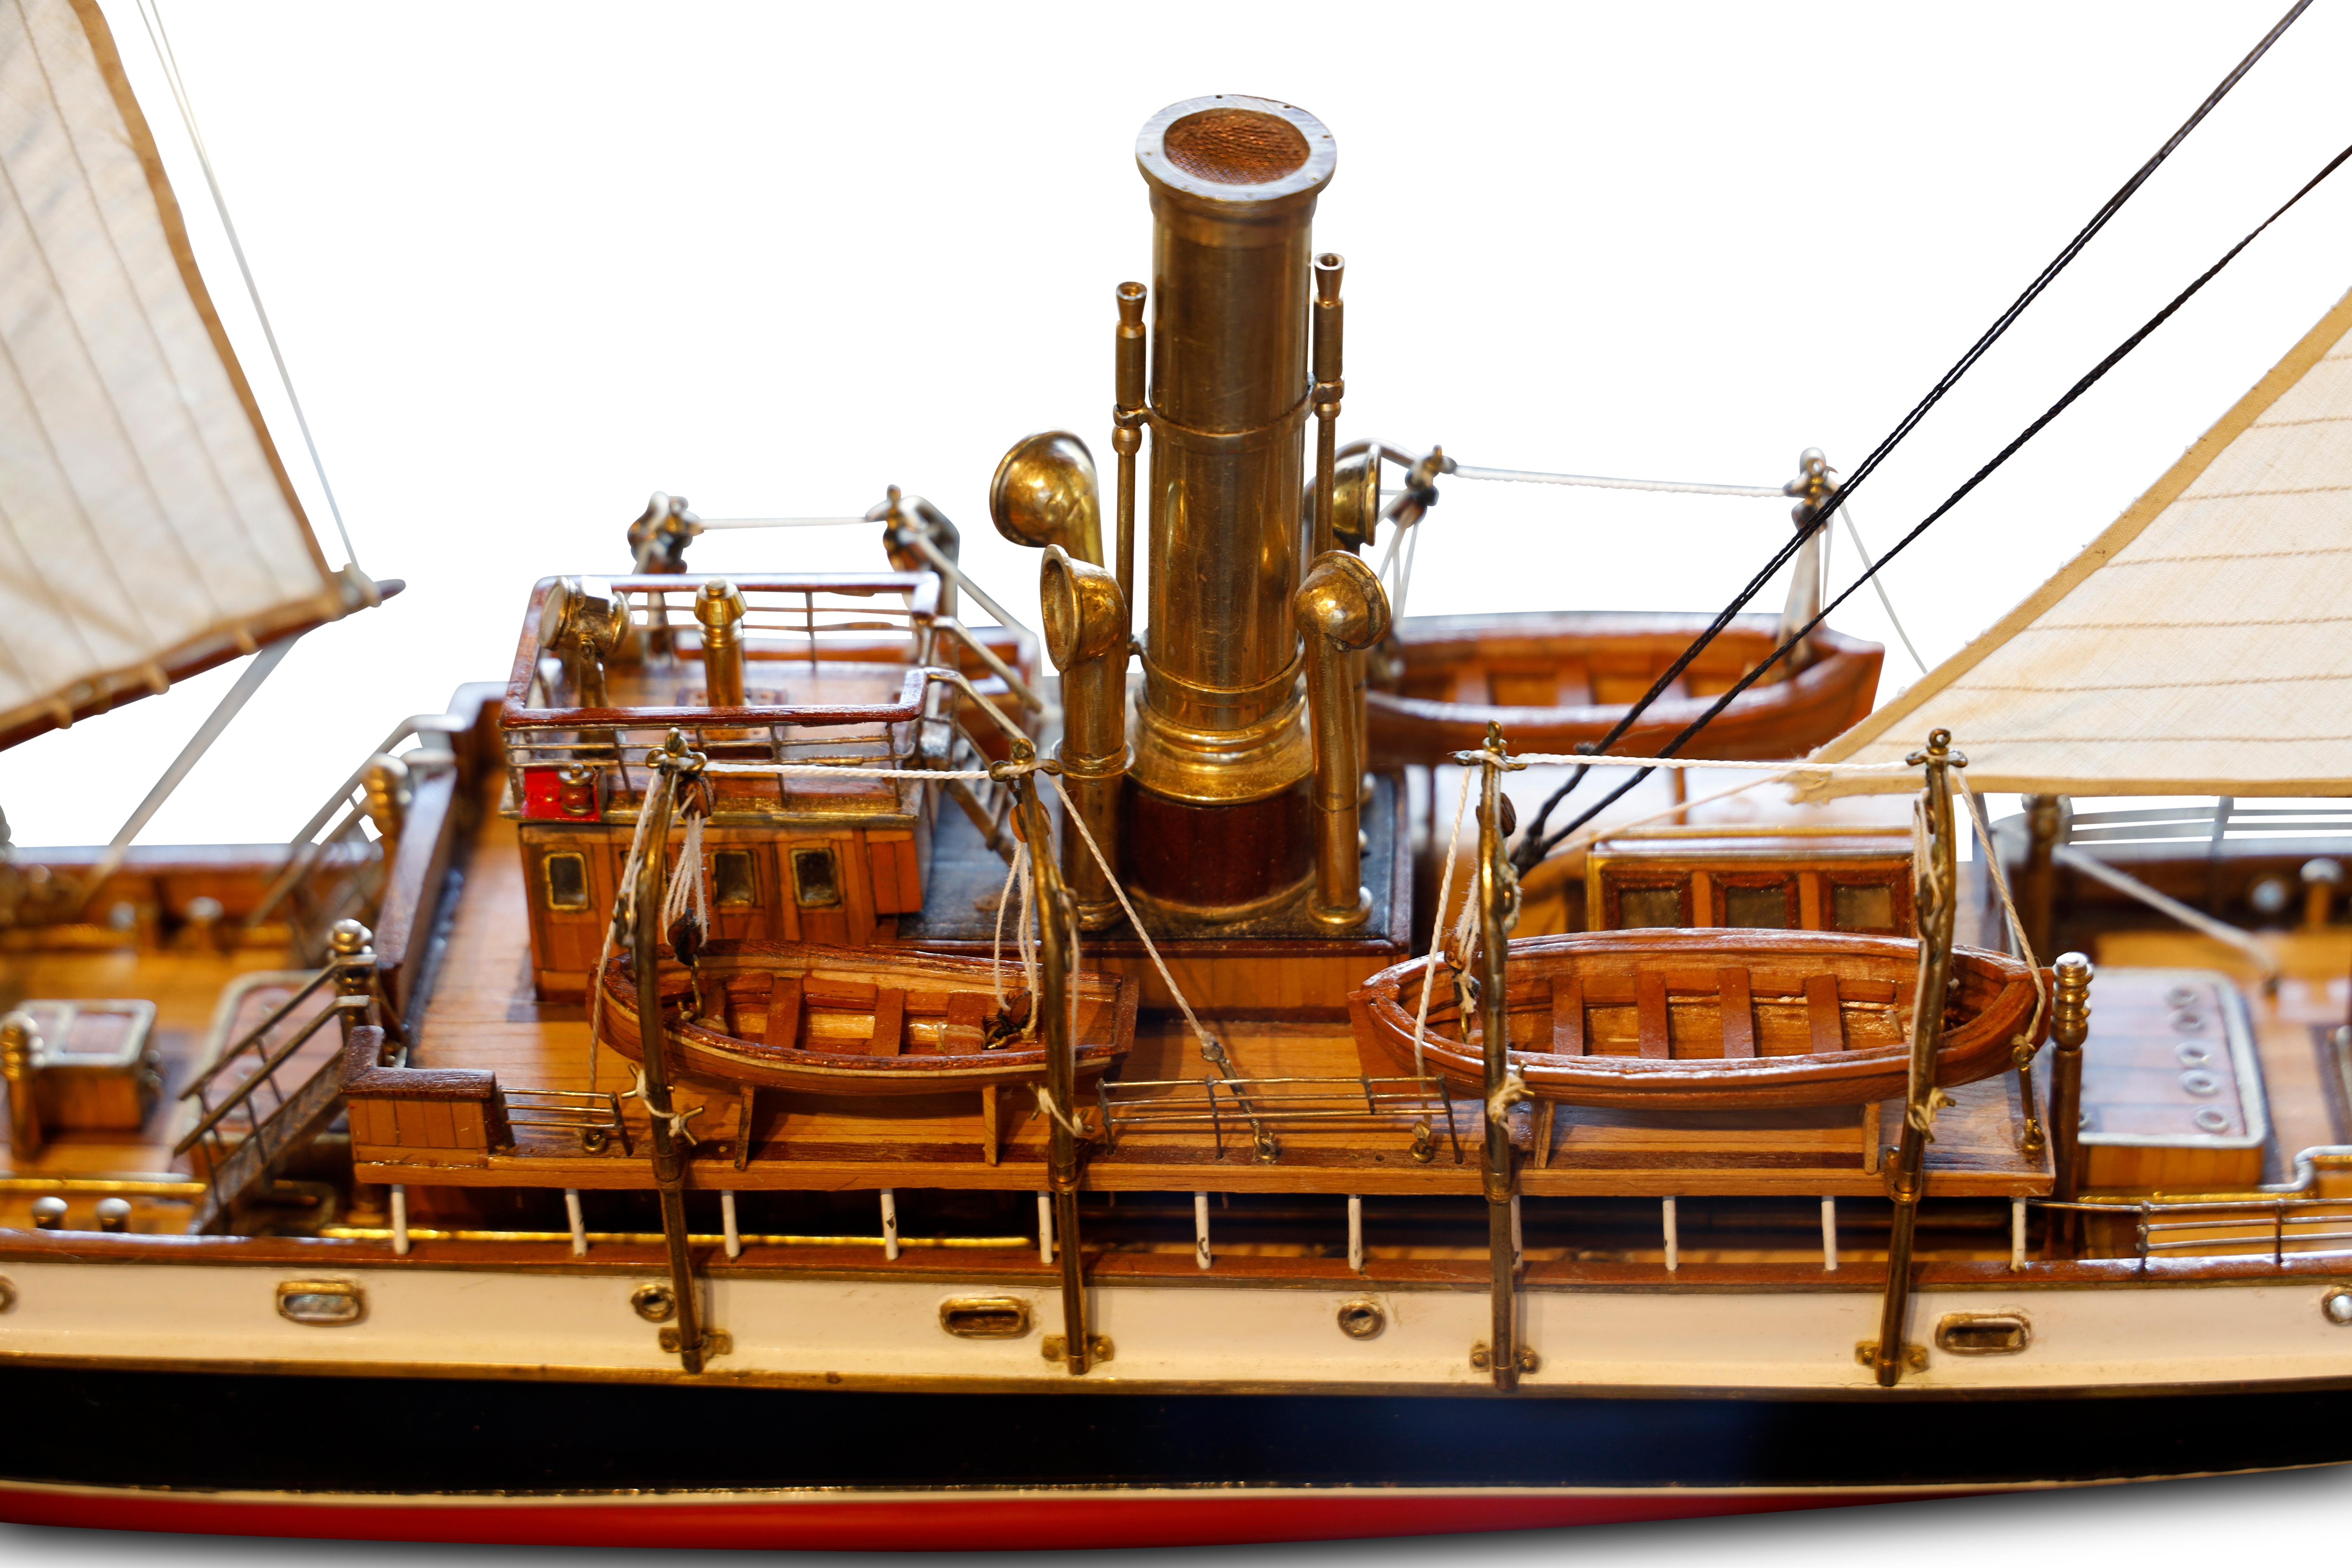 Modell eines kaiserlich-russischen Hafenpatrouillenschiffs, Commander Bering (1905), modelliert von G. Cheikhet. Geschnitzter und lackierter Rumpf mit Messingbändern, beplankte Decks mit detaillierten polierten Messing- und Holzbeschlägen, darunter